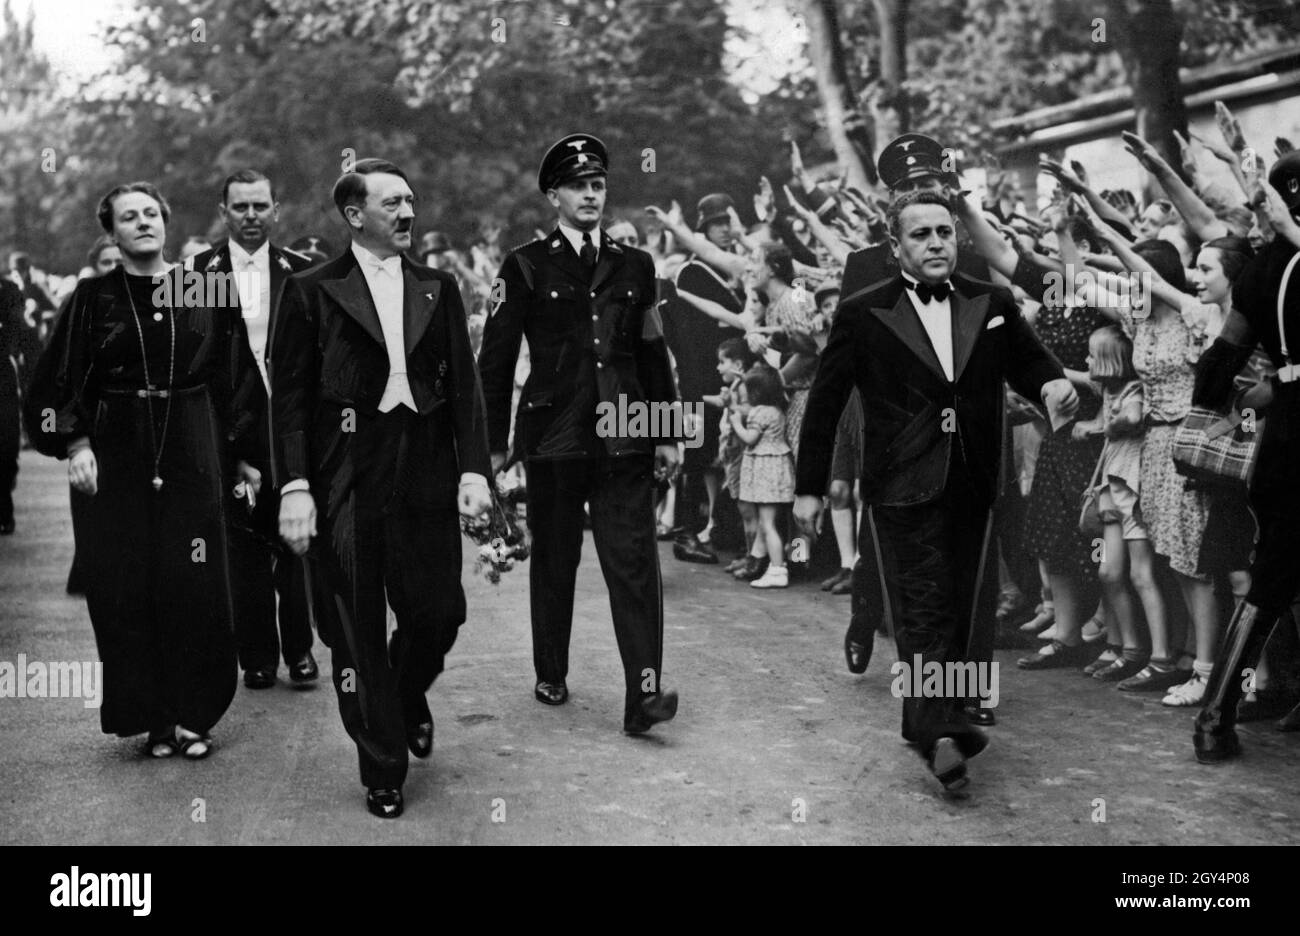 Le directeur du festival et le loyaliste d'Hitler Winifred Wagner, l'aide de camp d'Hitler Julius Schaub et Adolf Hitler marchent devant une foule enthousiaste.Wagner est resté publiquement fidèle à Hitler après la guerre comme un ancien nazi.[traduction automatique] Banque D'Images